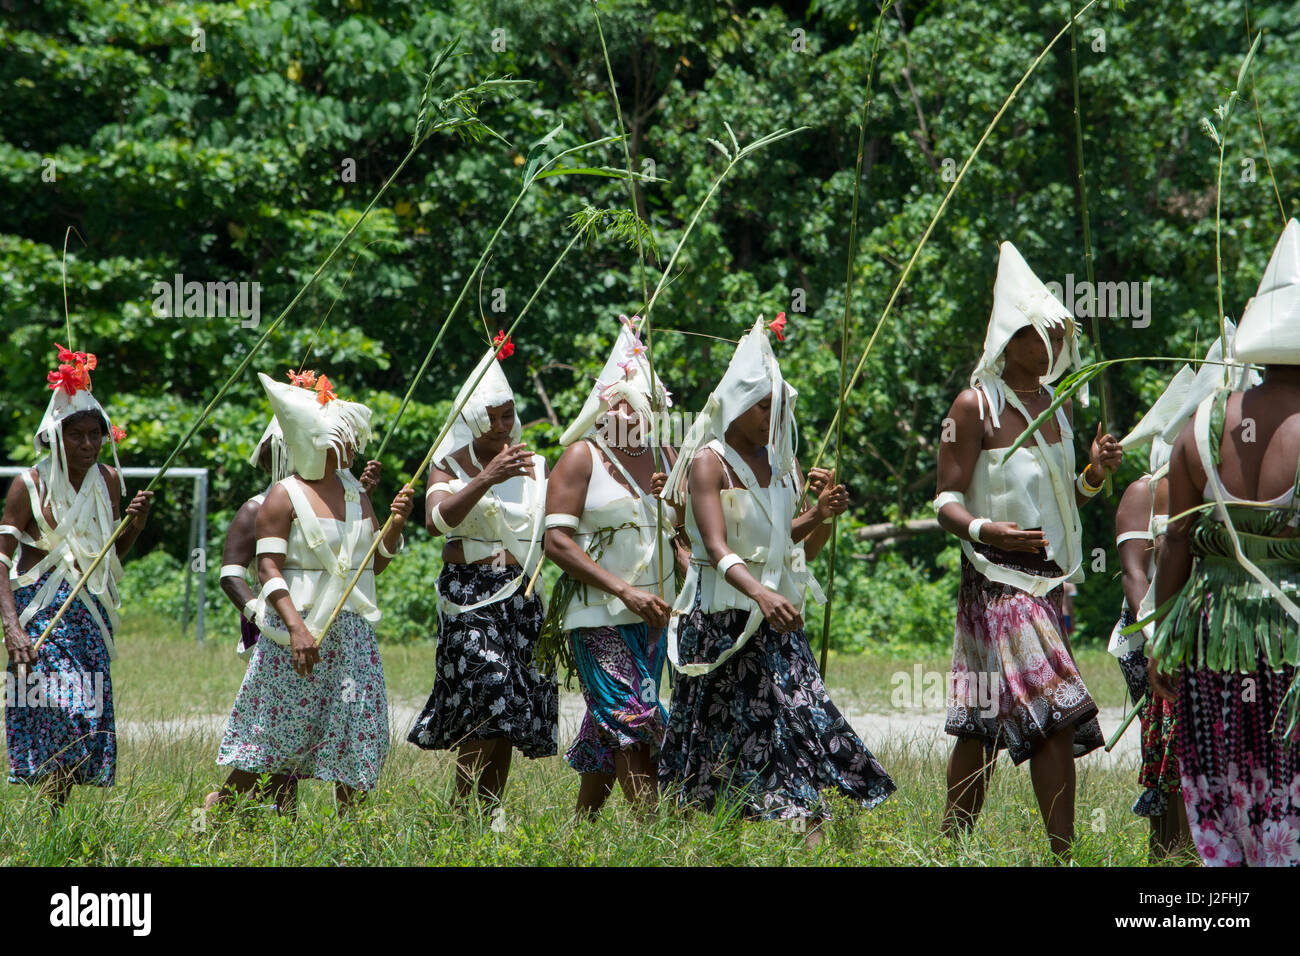 La Melanesia, Makira-Ulawa Provincia, Isole Salomone, isola di Owaraha o Owa Raha (precedentemente noto come Santa Ana), villaggio di Gupuna aka Ghupuna. Tradizionali prestazioni folkloristiche del ballo di nozze. Foto Stock